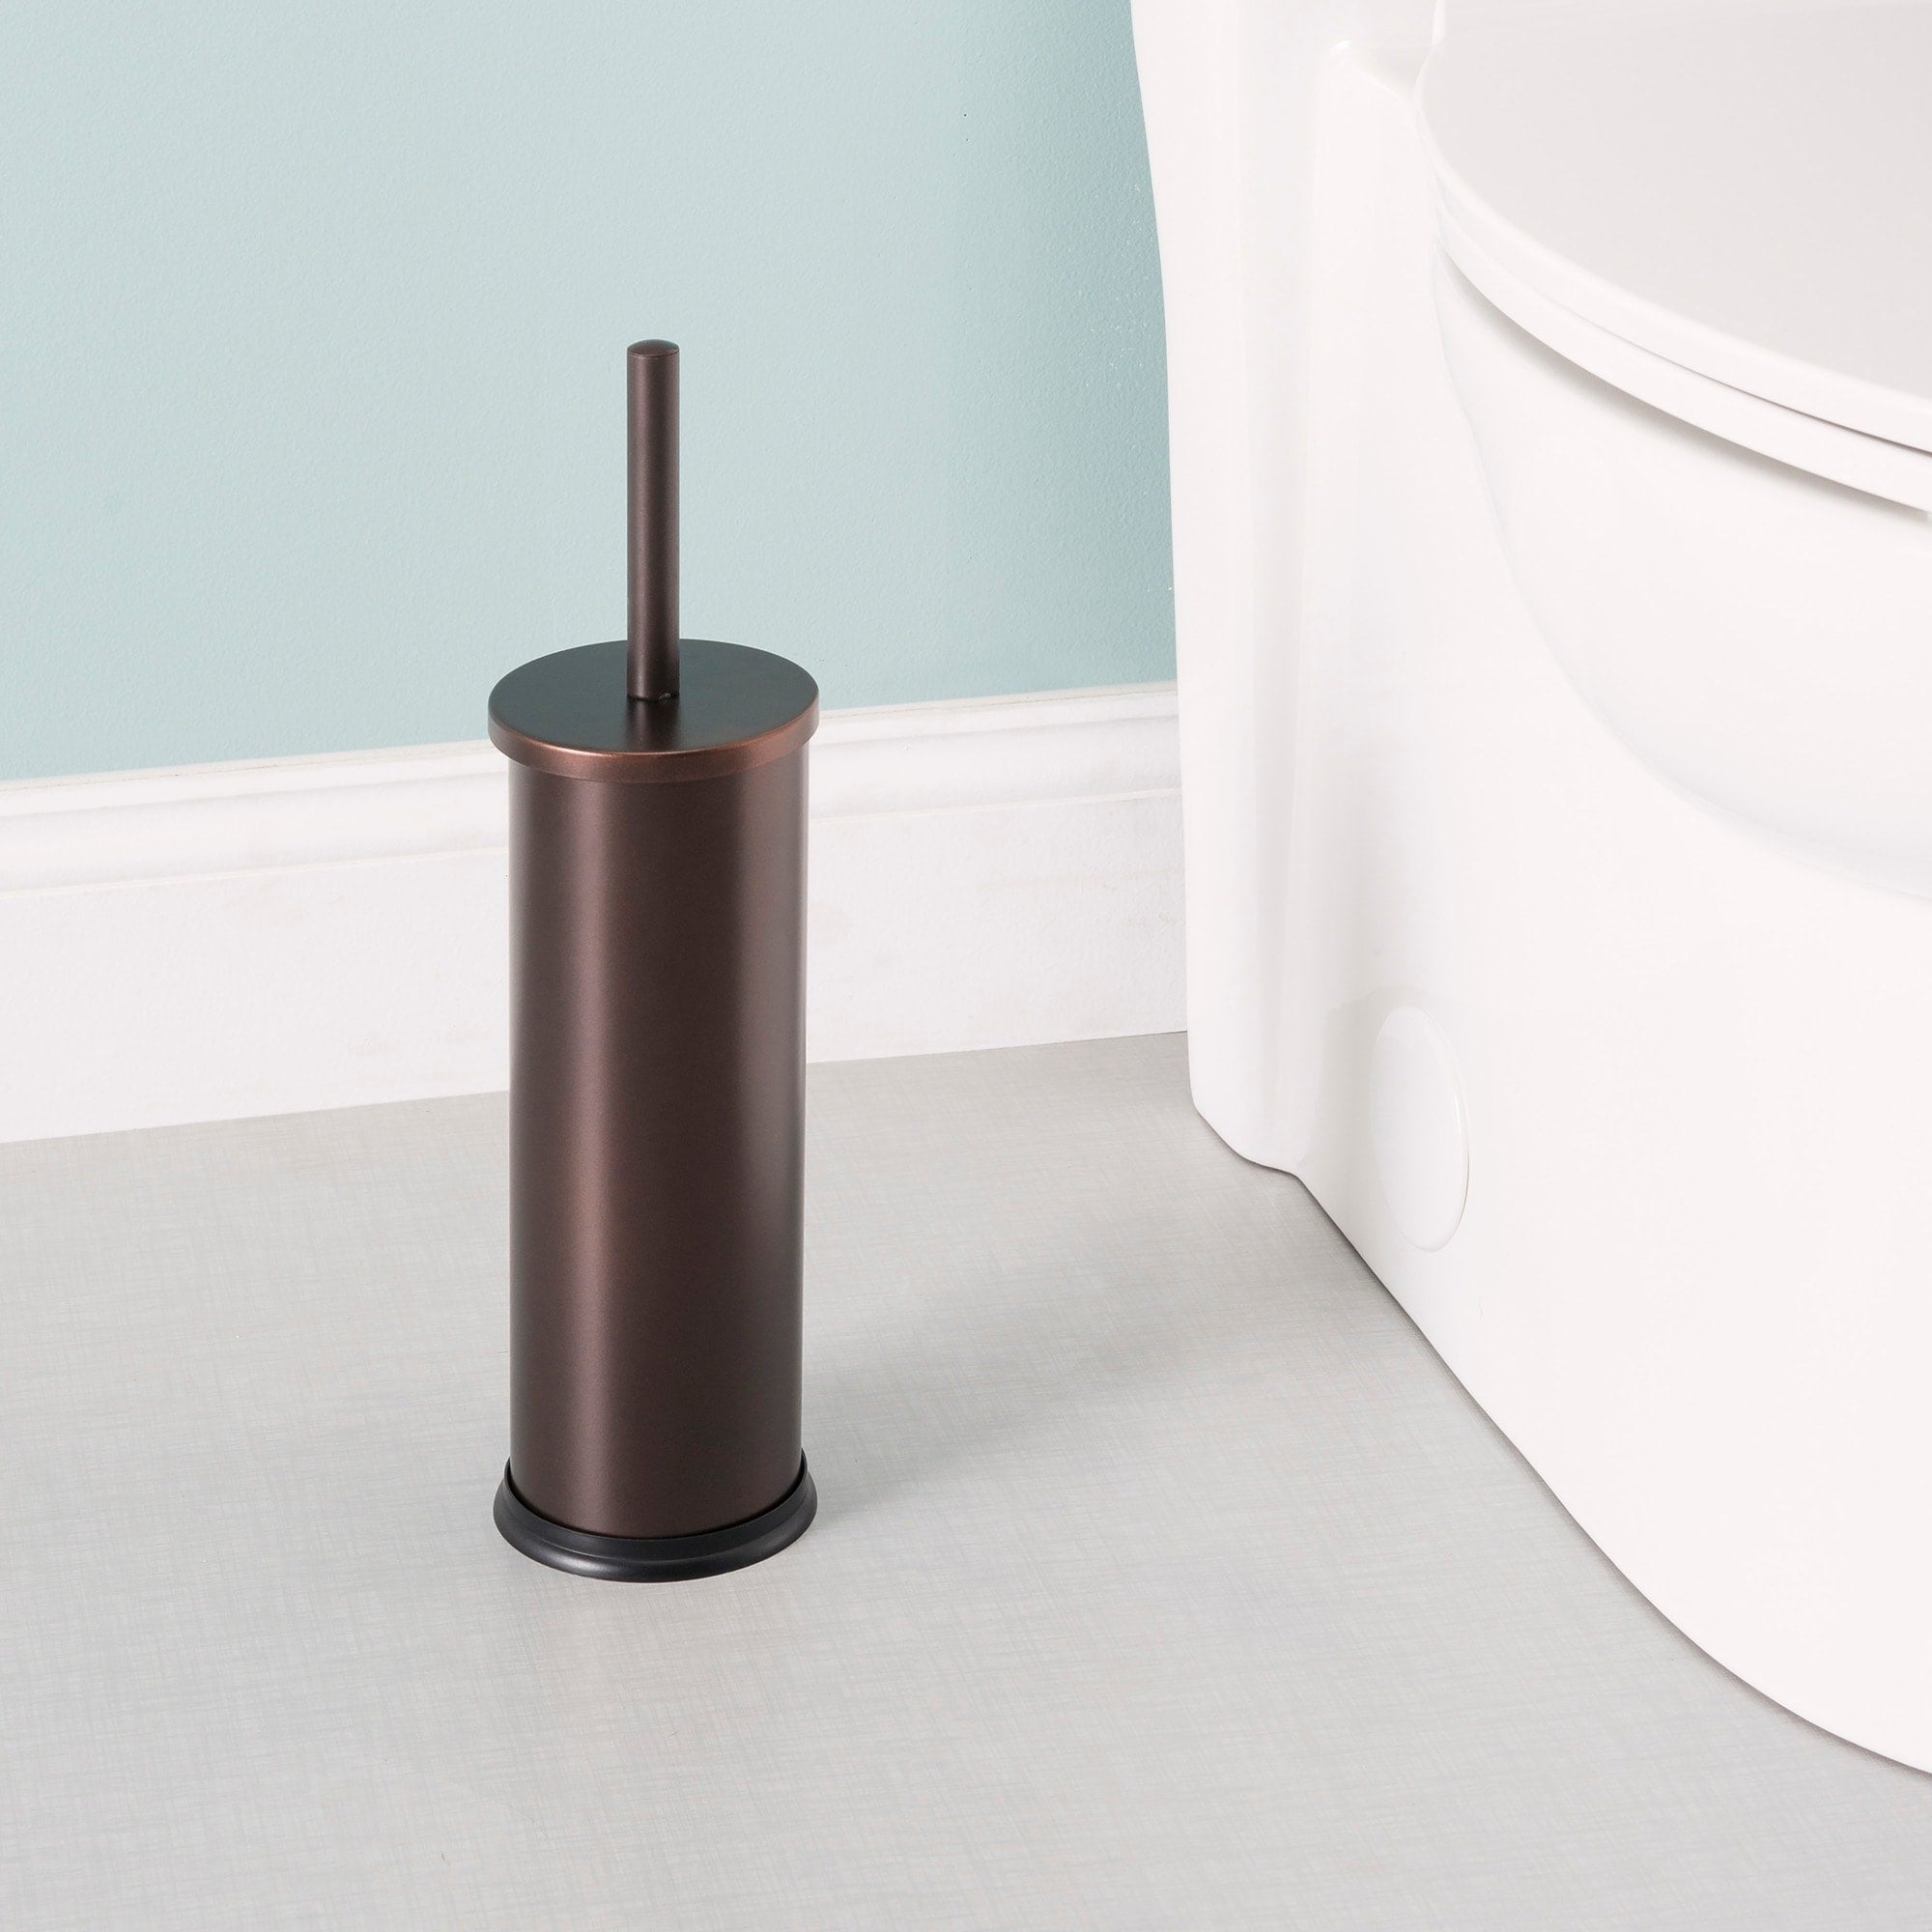 Home Basics Bronze Toilet Brush Holder $5.00 EACH, CASE PACK OF 12